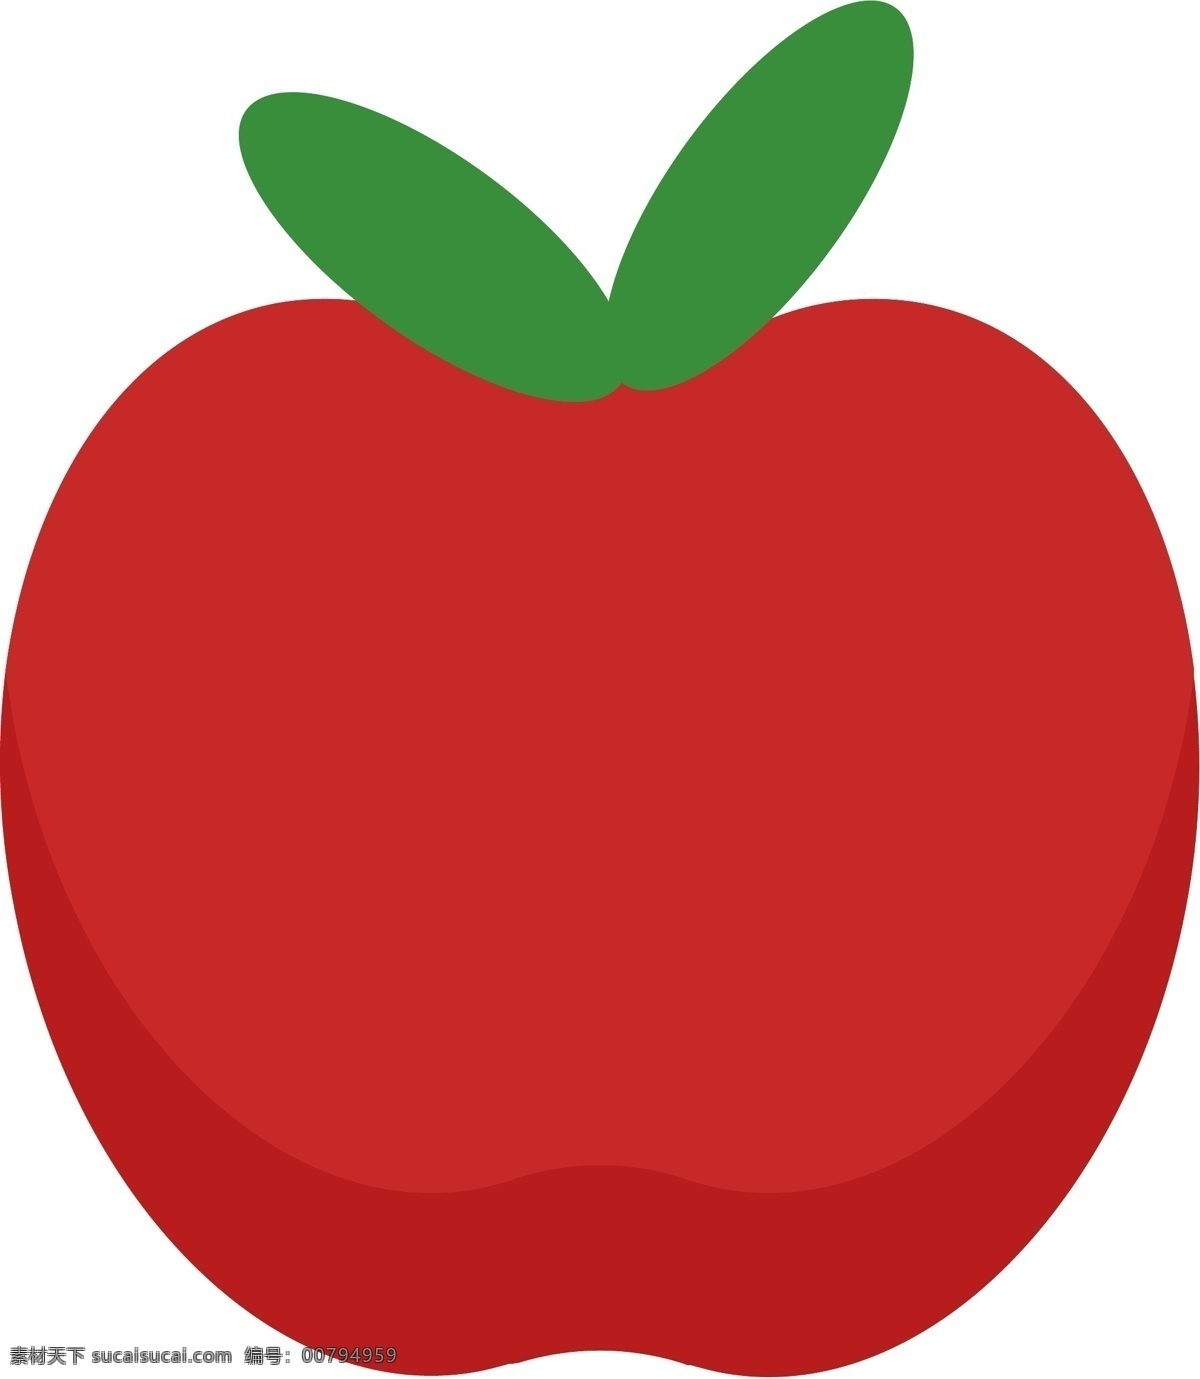 苹果卡通 苹果 卡通苹果 矢量苹果 苹果简笔画 水果 卡通水果 矢量水果 卡通图案 红苹果